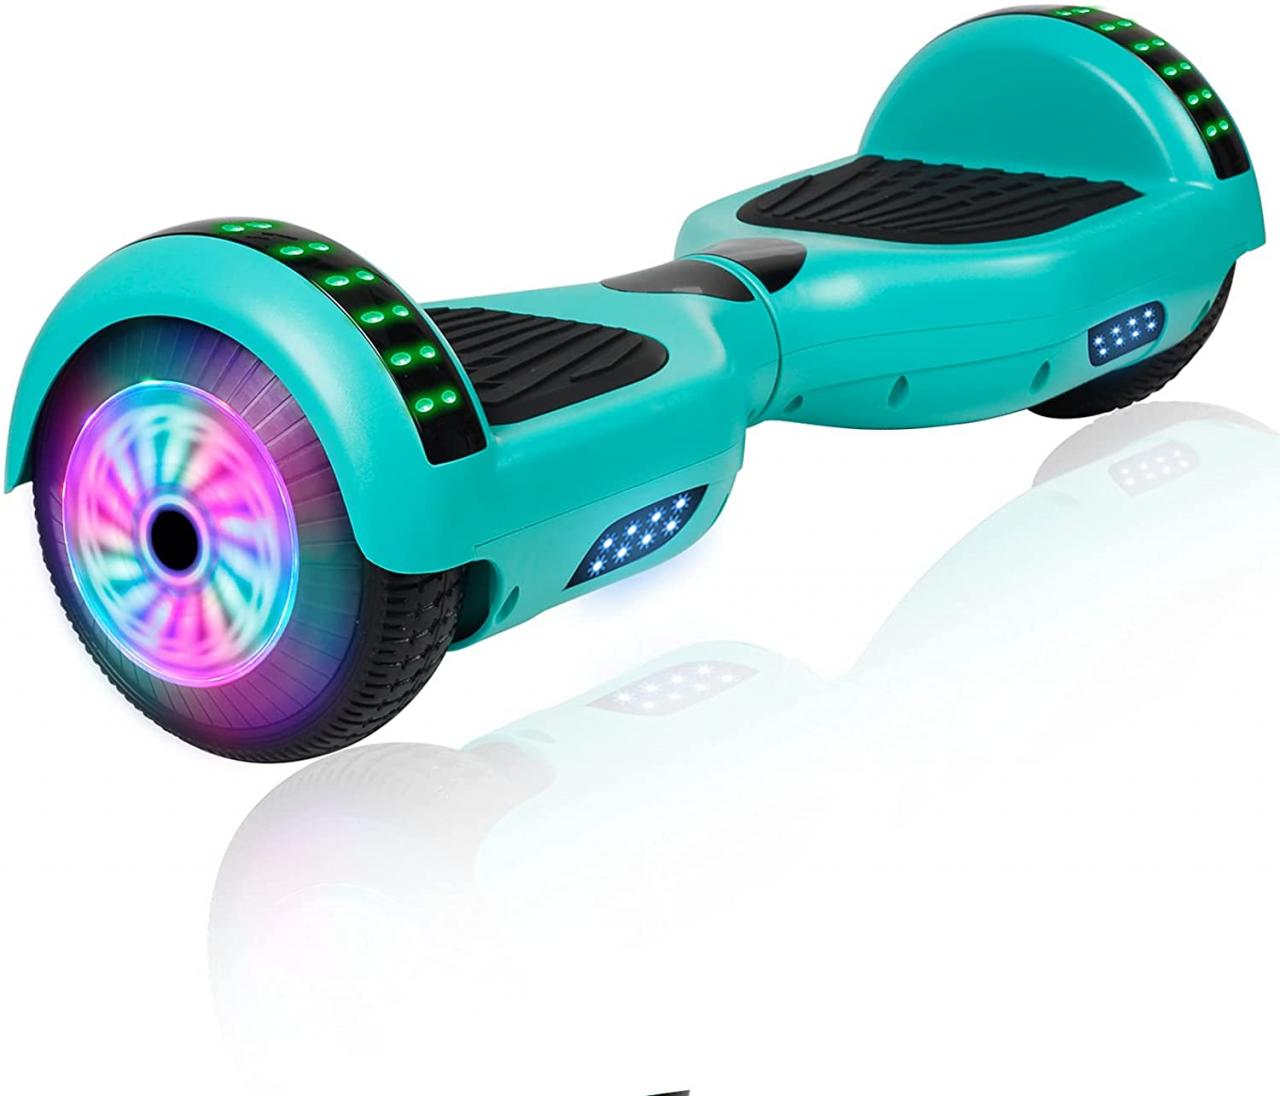 Buy JOLEGE Hoverboard, 6.5 Two-Wheel Self Balancing Hoverboard - LED Light  Wheel Scooter Hoverboard for Kids Online in Hong Kong. B07L81JHPC